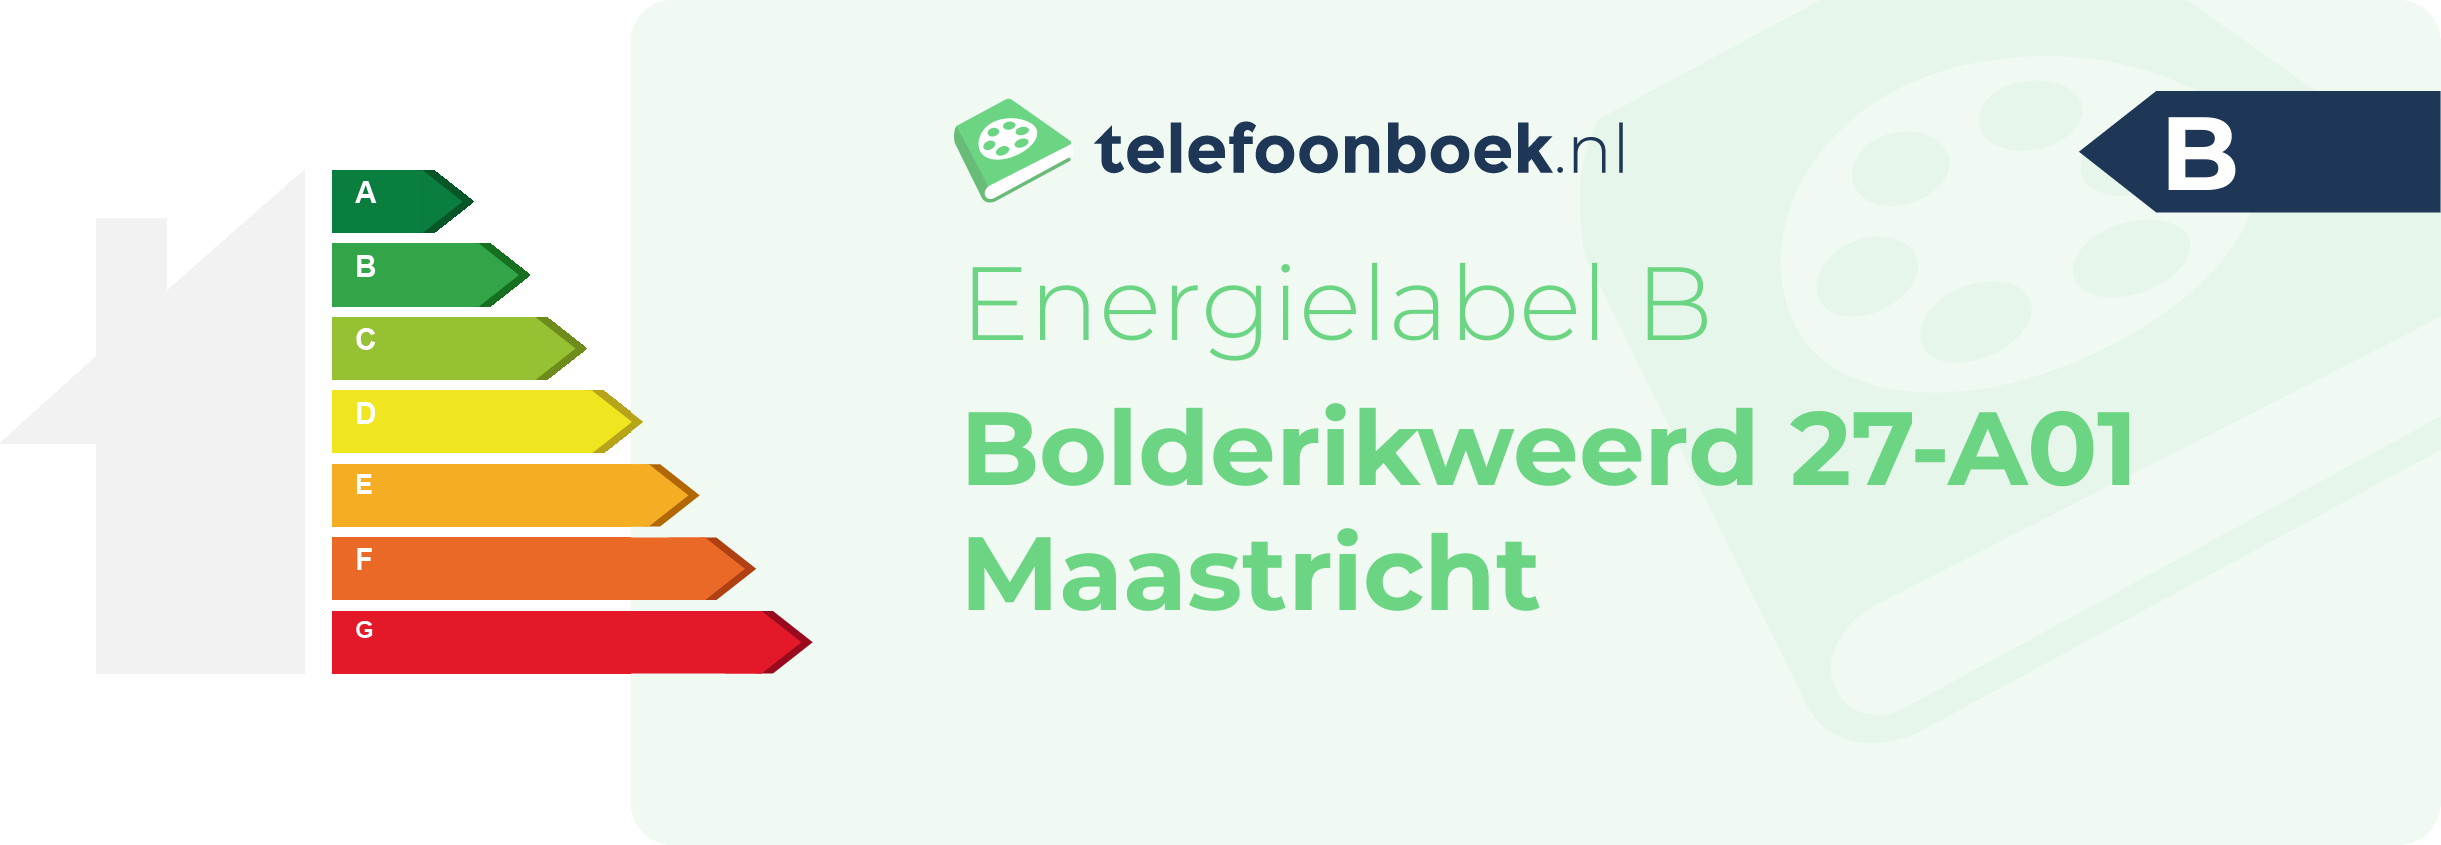 Energielabel Bolderikweerd 27-A01 Maastricht